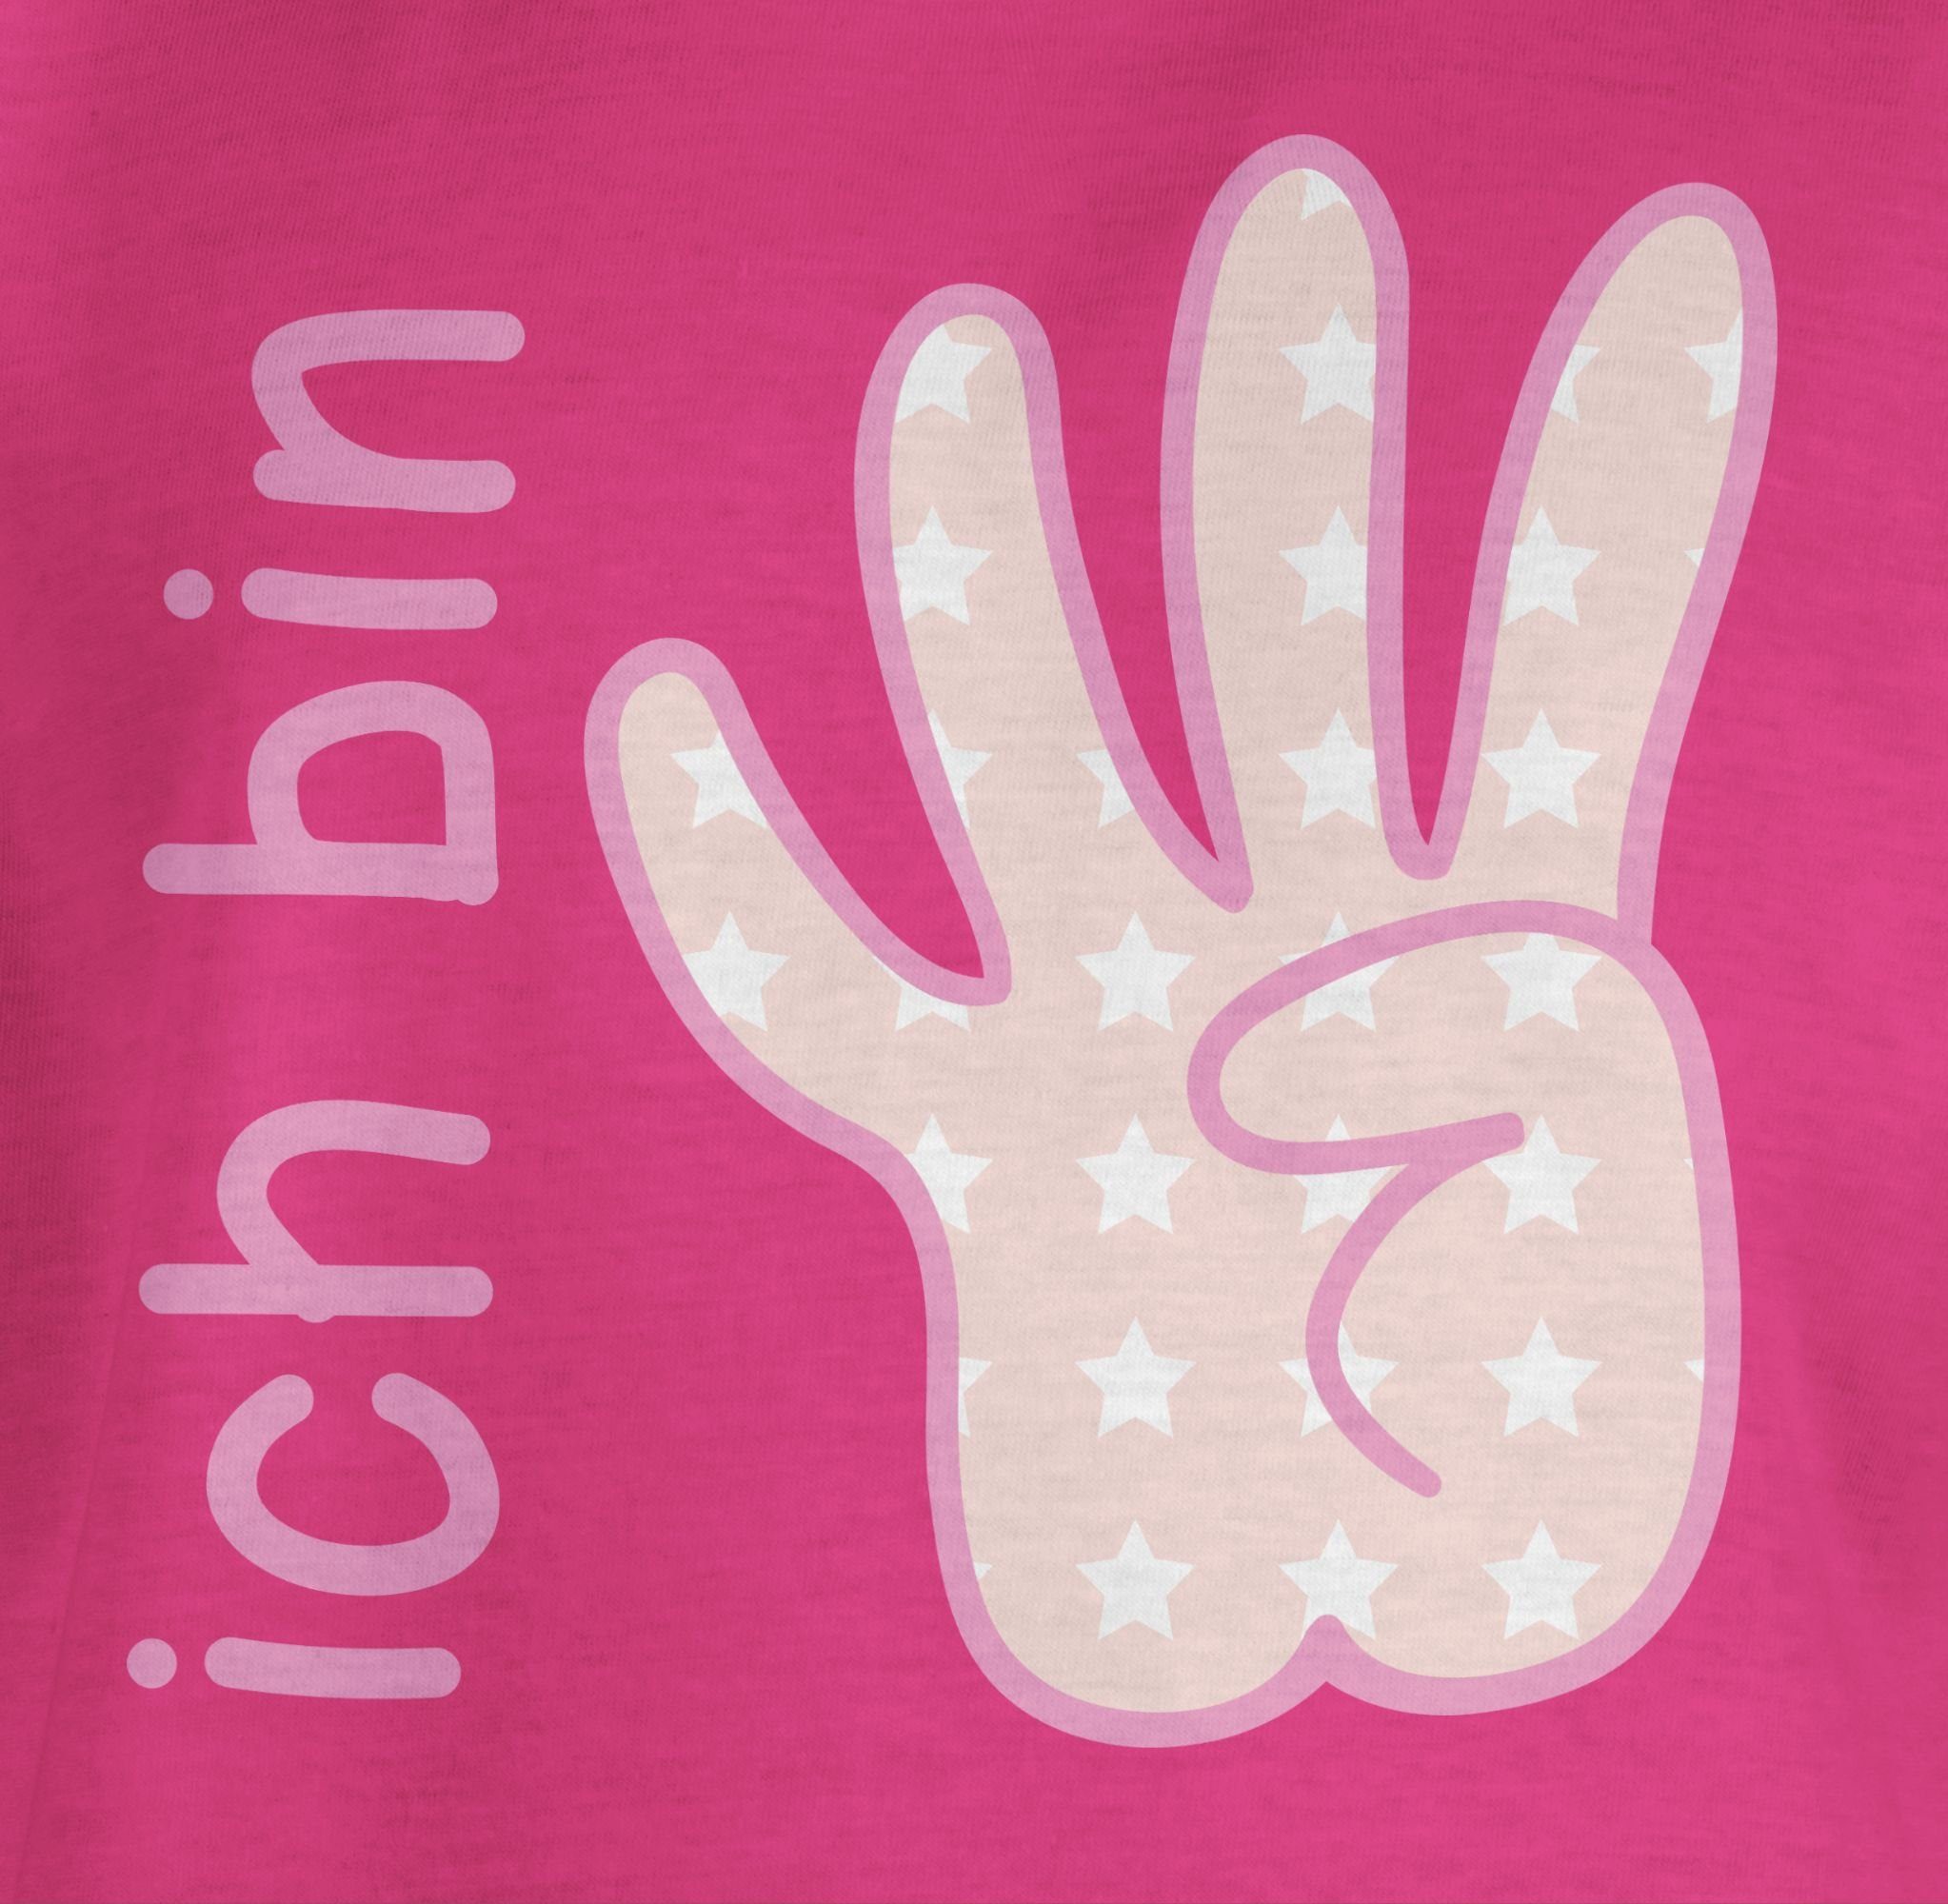 vier Shirtracer Geburtstag Fuchsia rosa 4. T-Shirt Ich 1 bin Zeichensprache